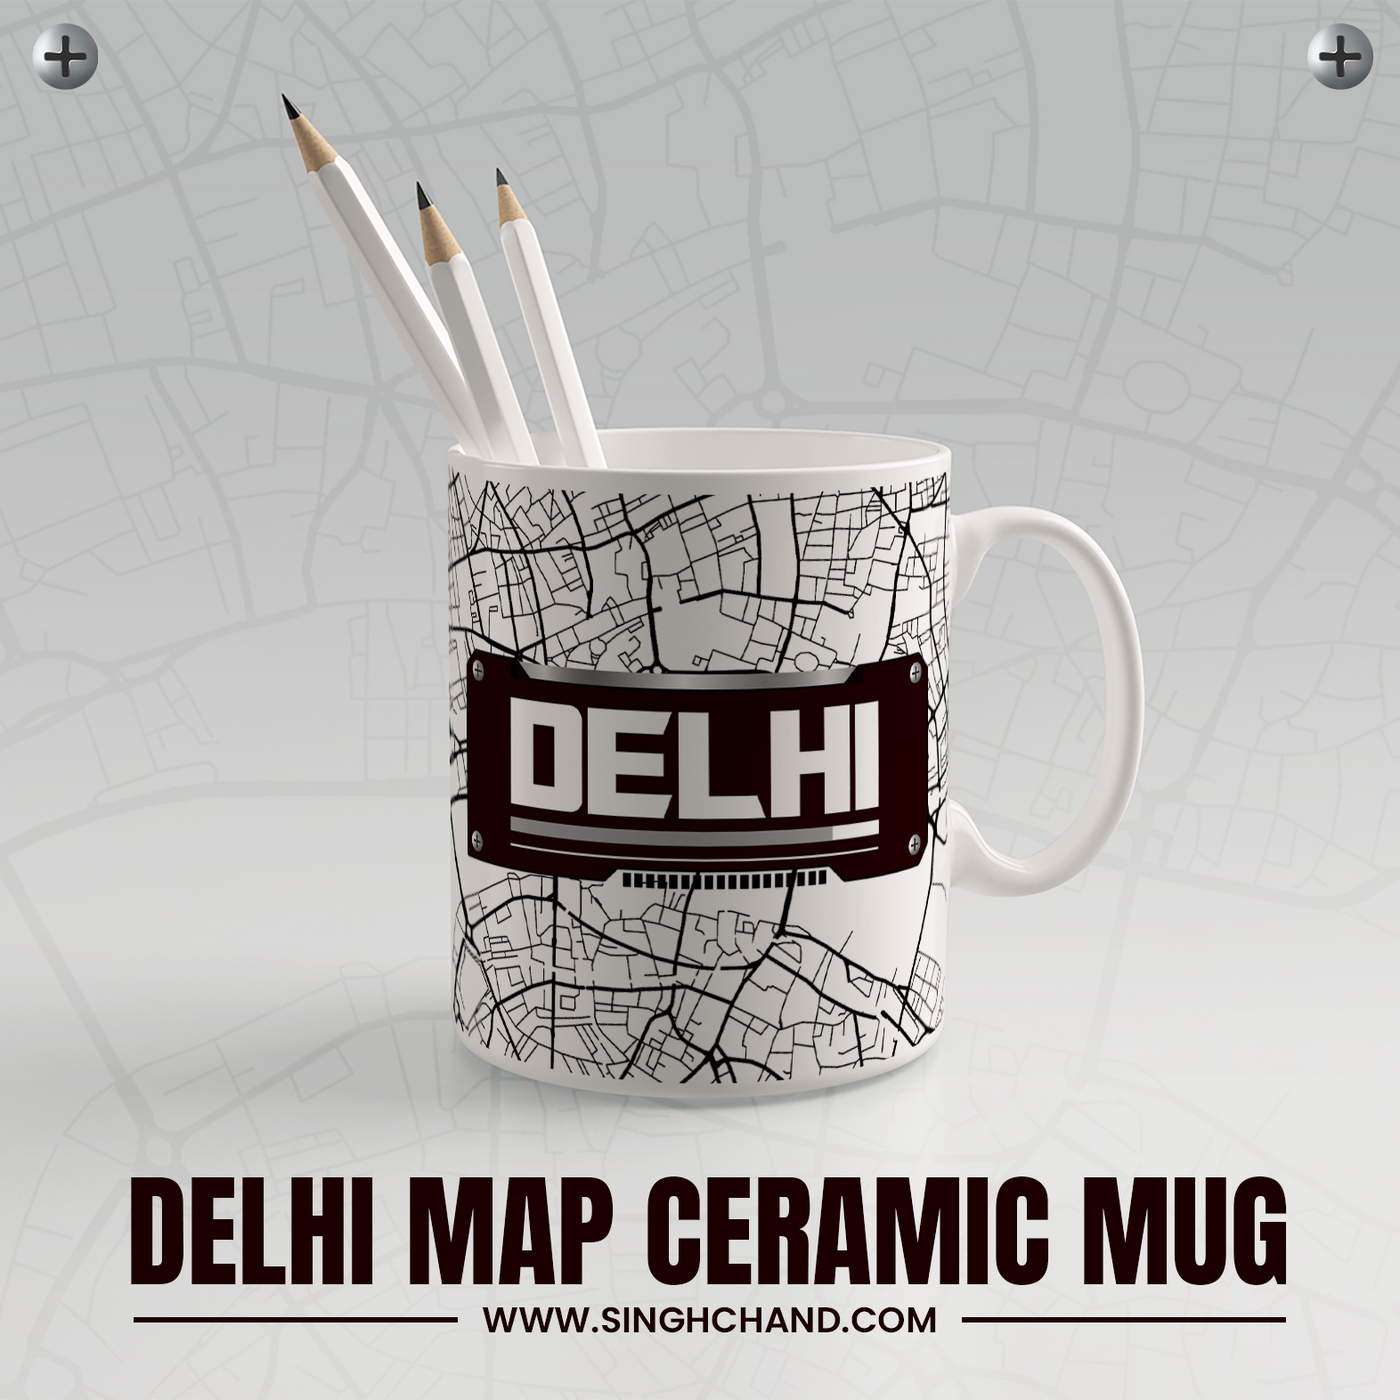 DELHI MAP CERAMIC MUG